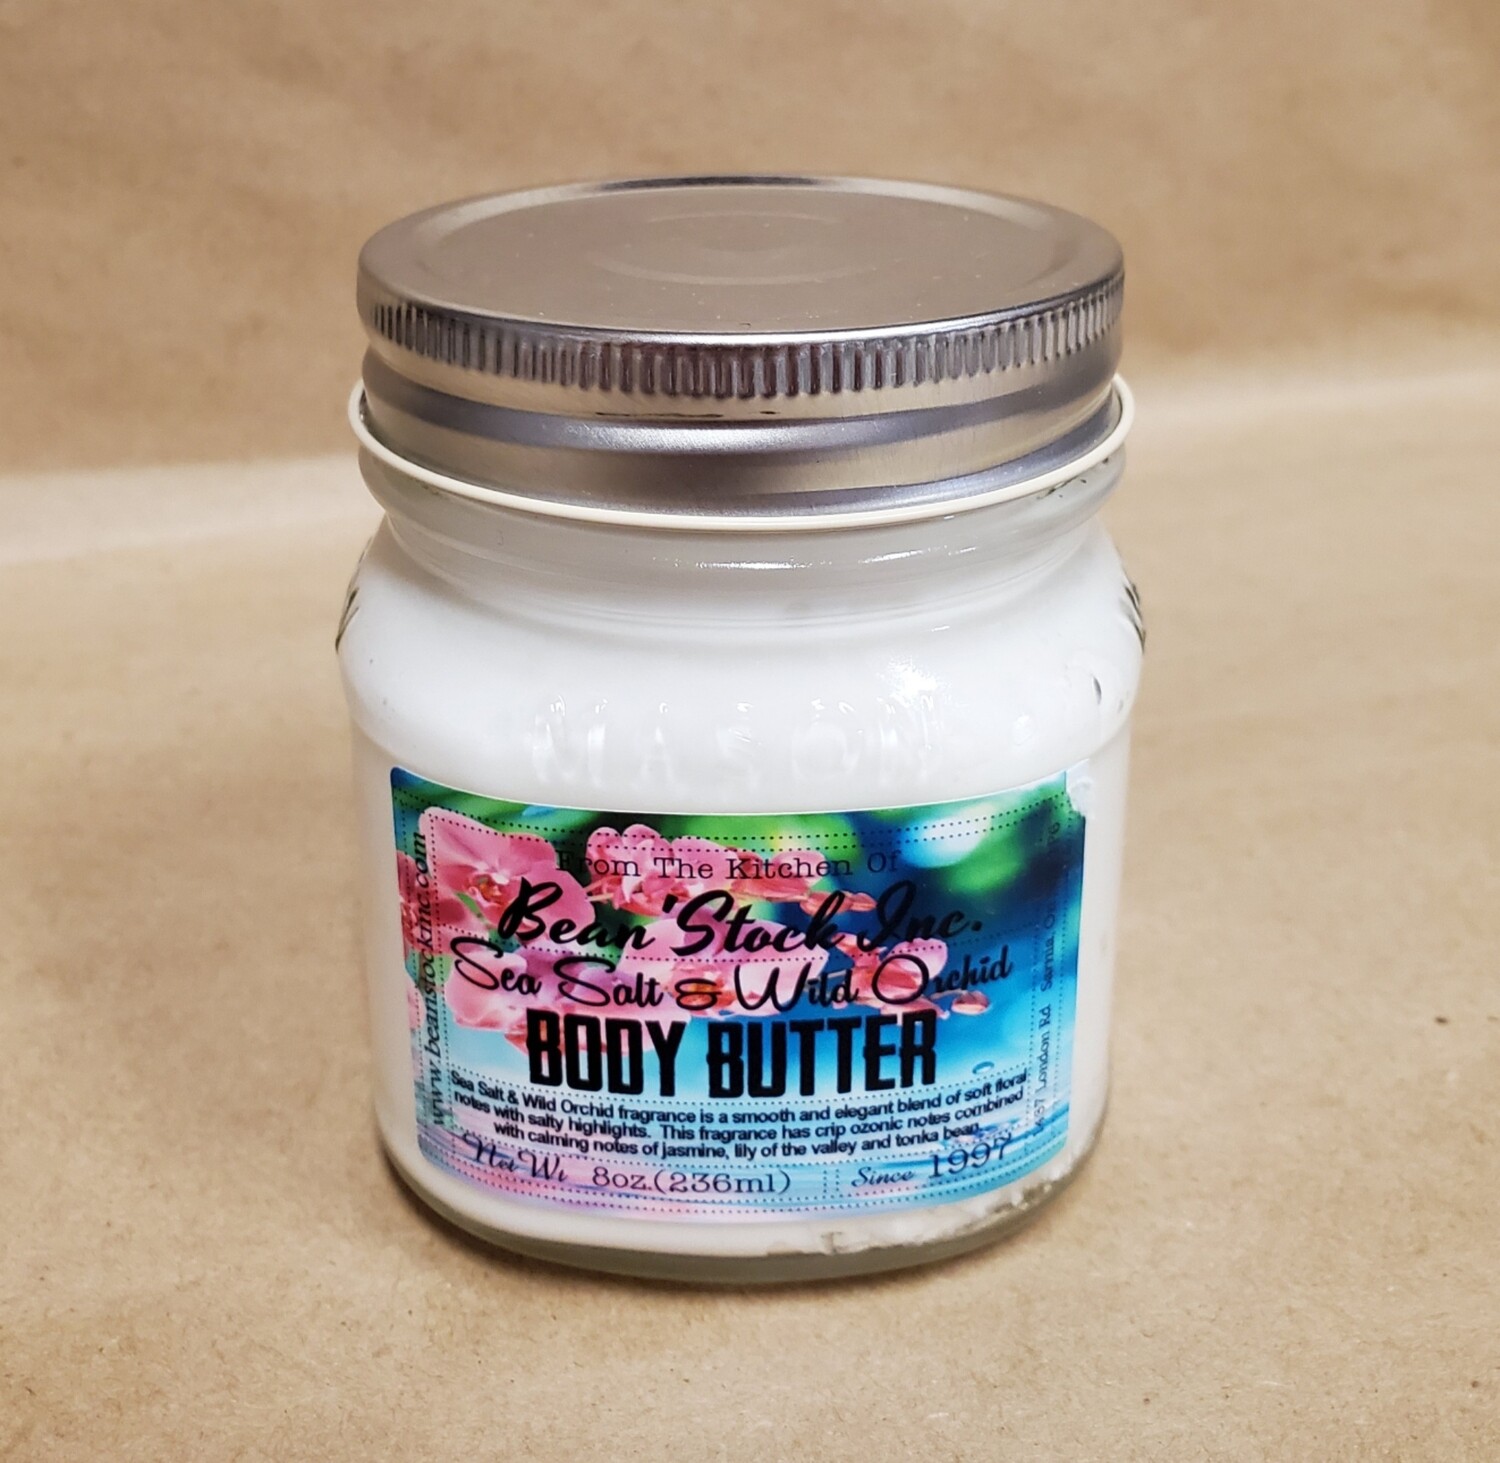 Bean'Stock Body Butter | Sea Salt & Wild Orchid